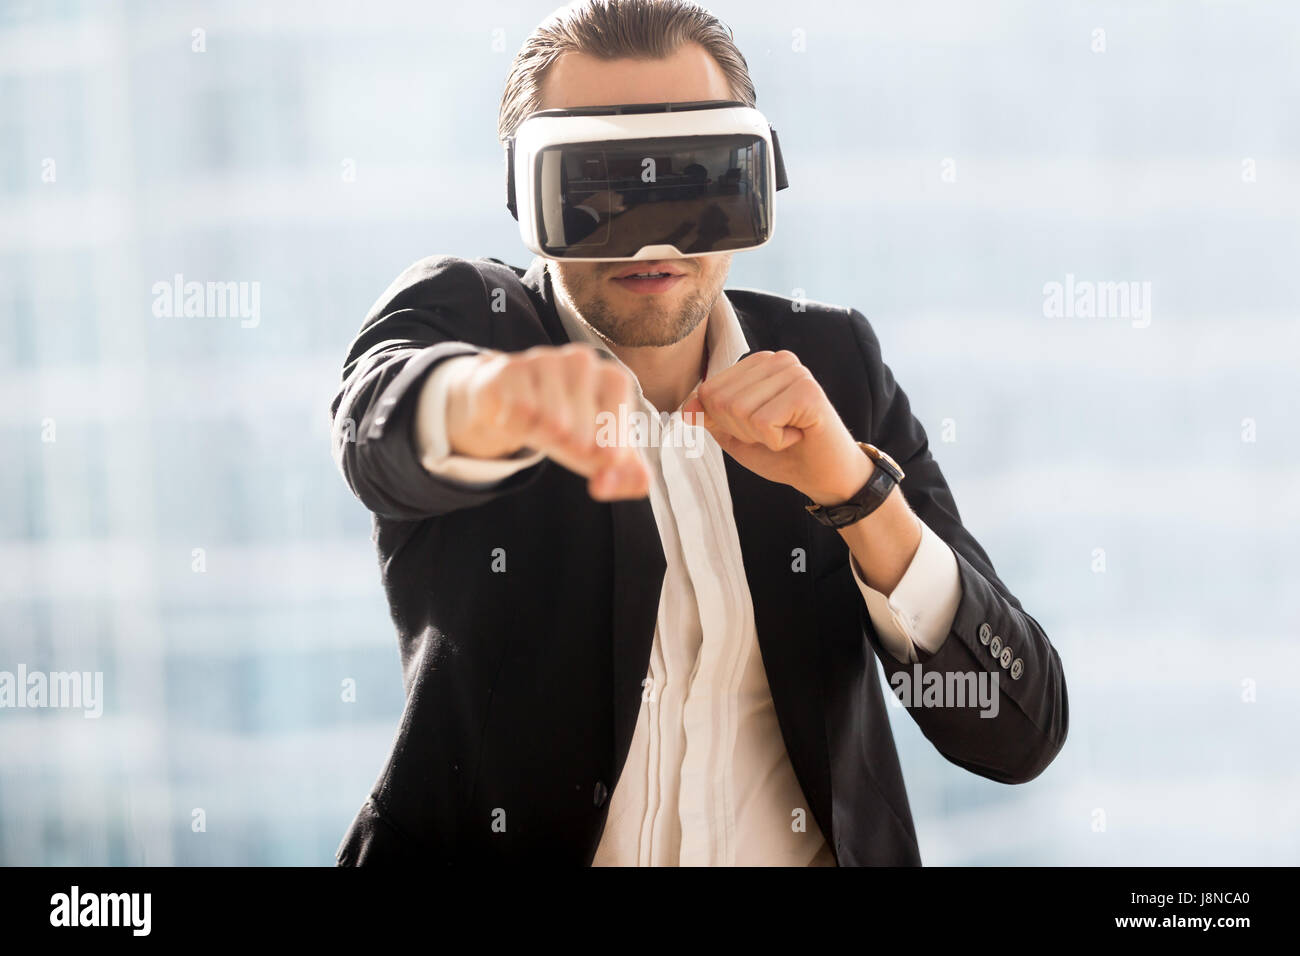 L'uomo boxe con occhiali per realtà virtuale sulla testa Foto Stock